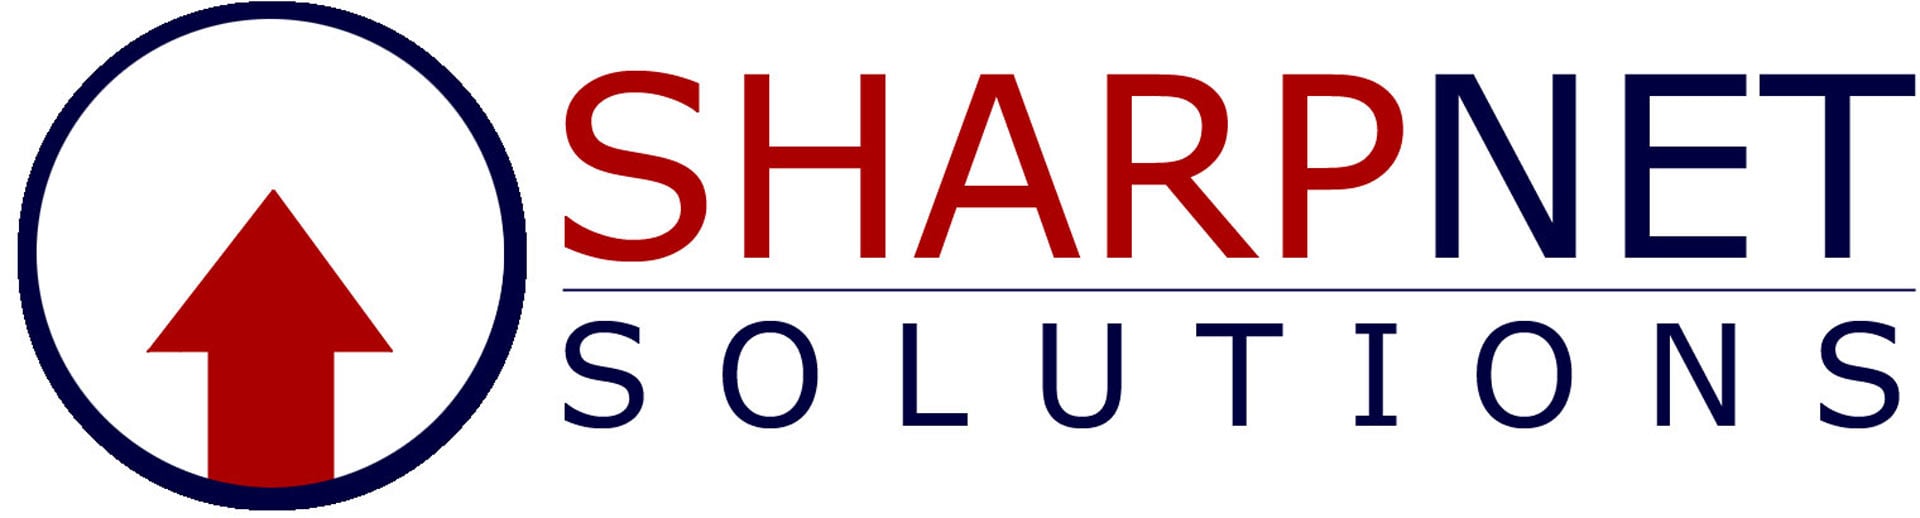 Best SMM Firm Logo: SharpNet